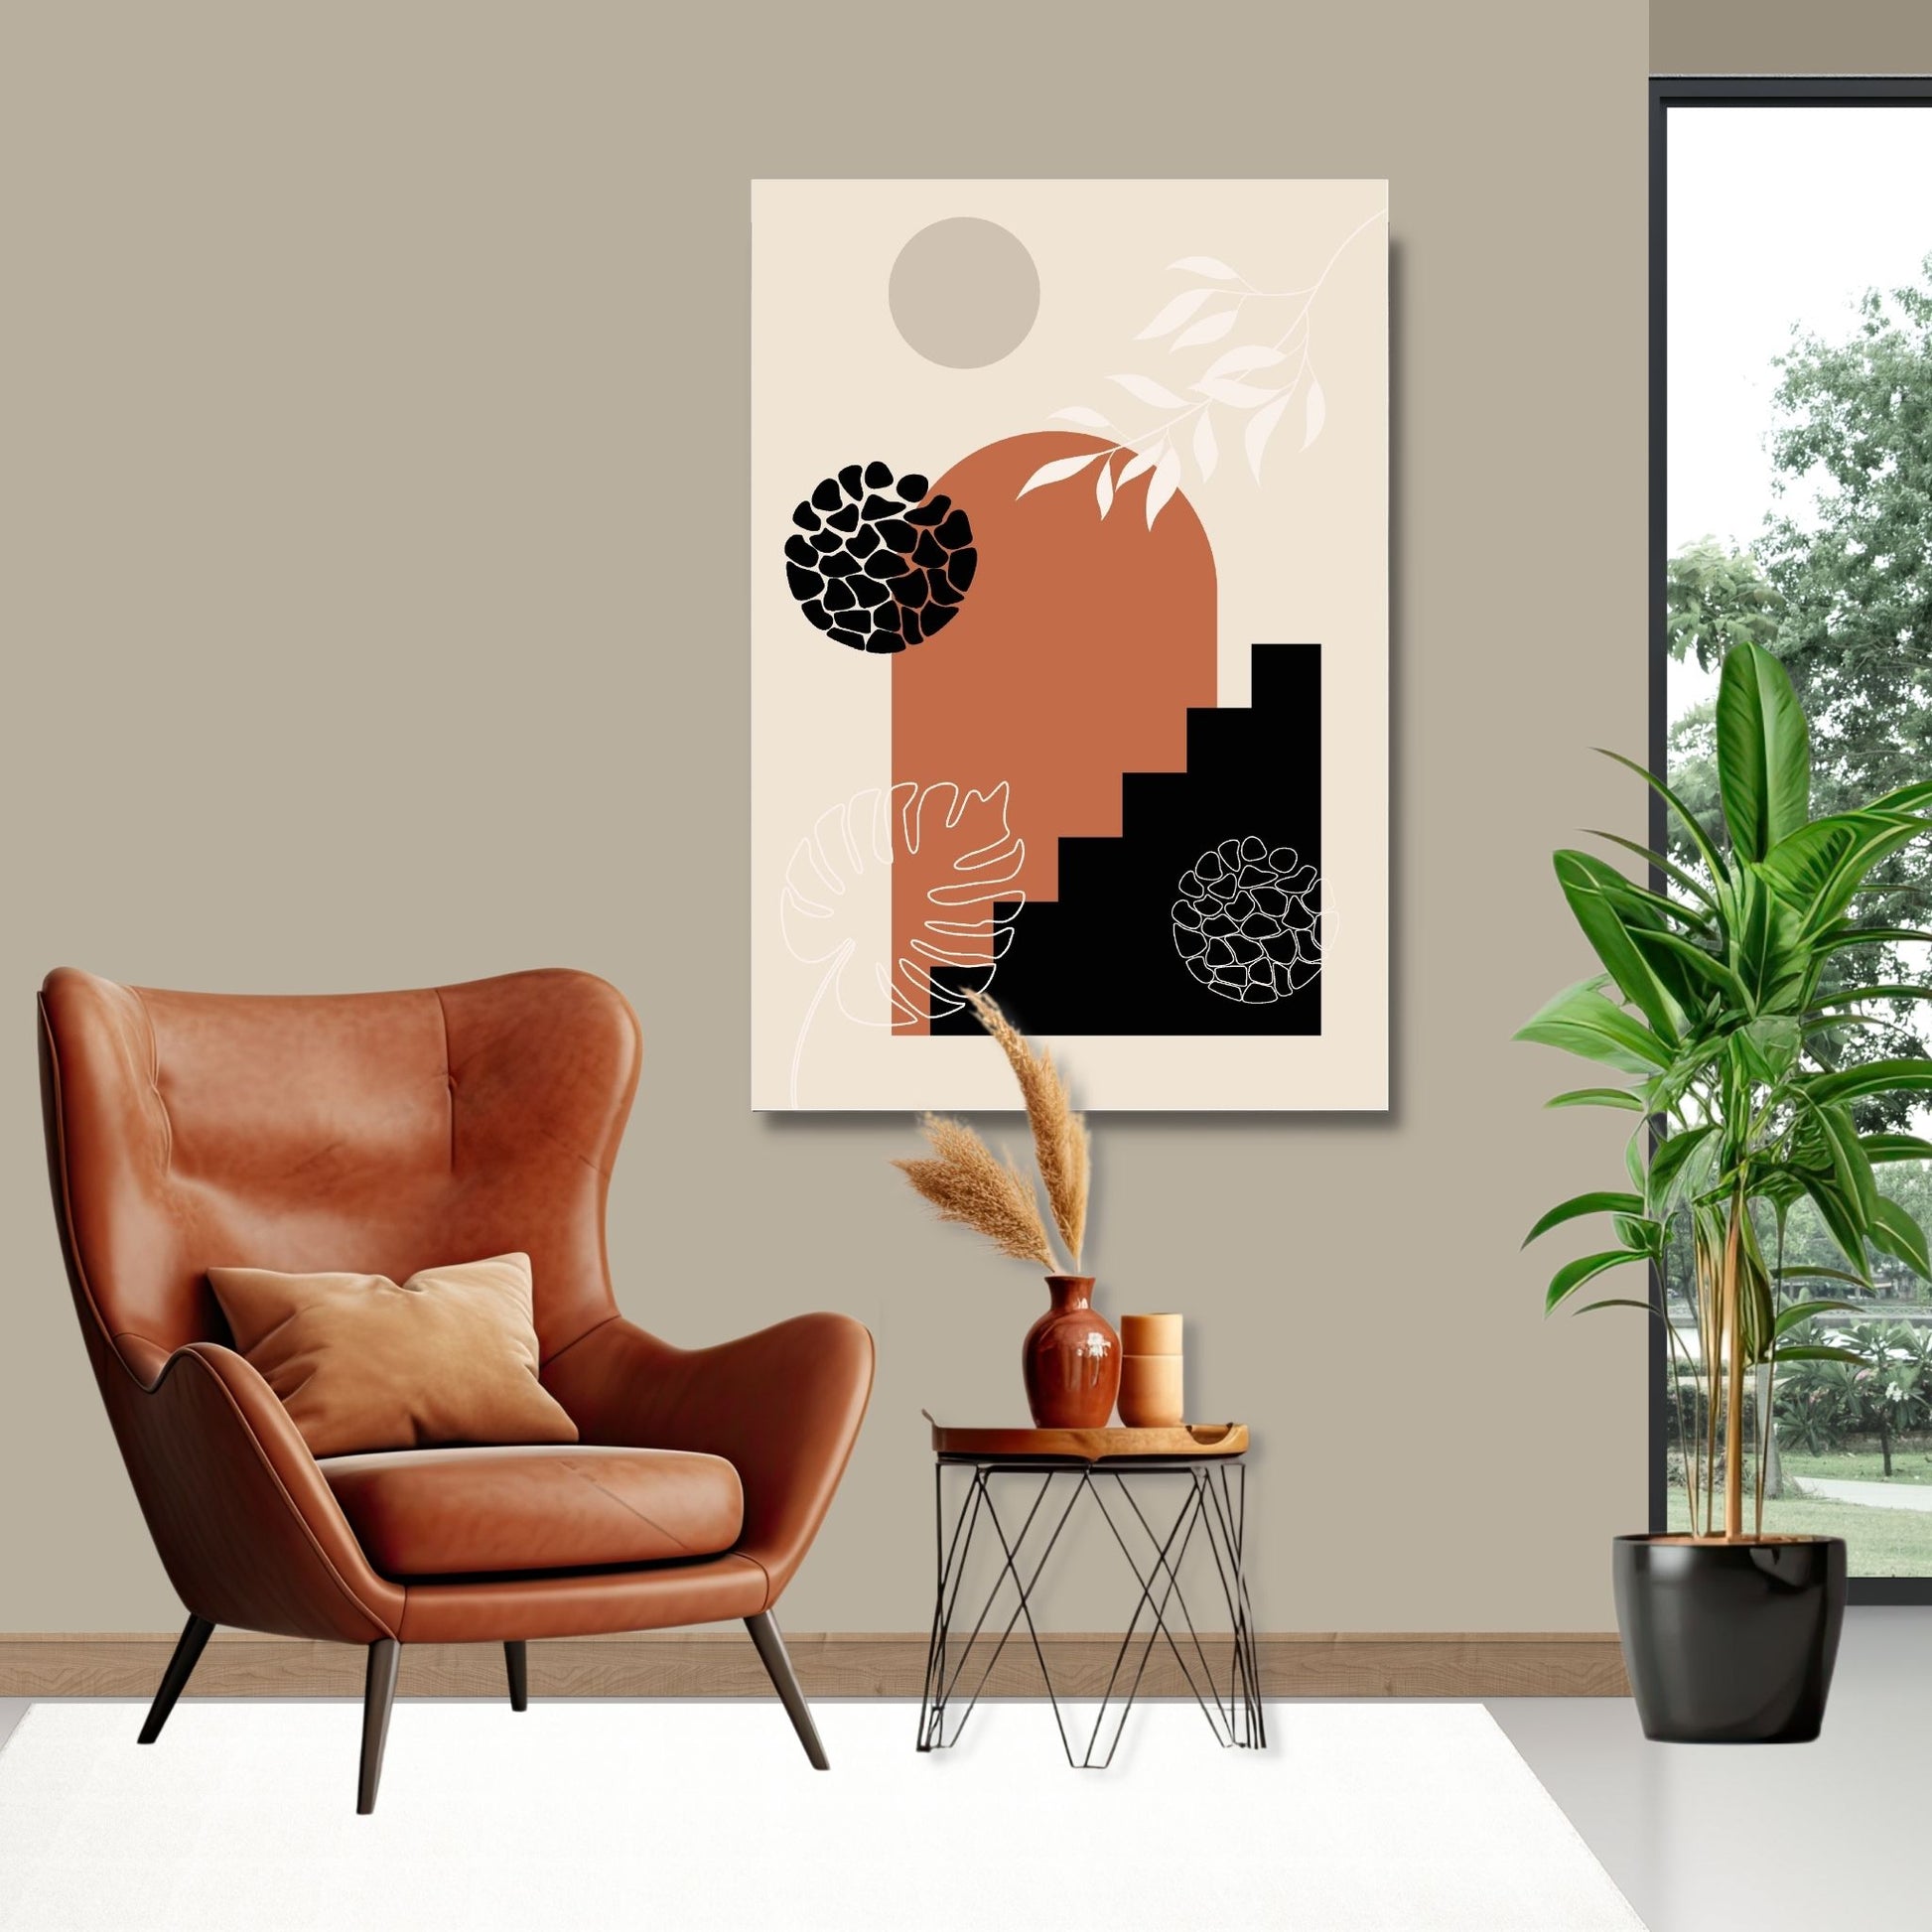 Abstract Shapes No2.1 i sort, beige, rust og hvite fargenyanser. Plakat har en hvit kant om gir dybde og fremhever motivet. Illustrasjon som viser motiv på lerret.